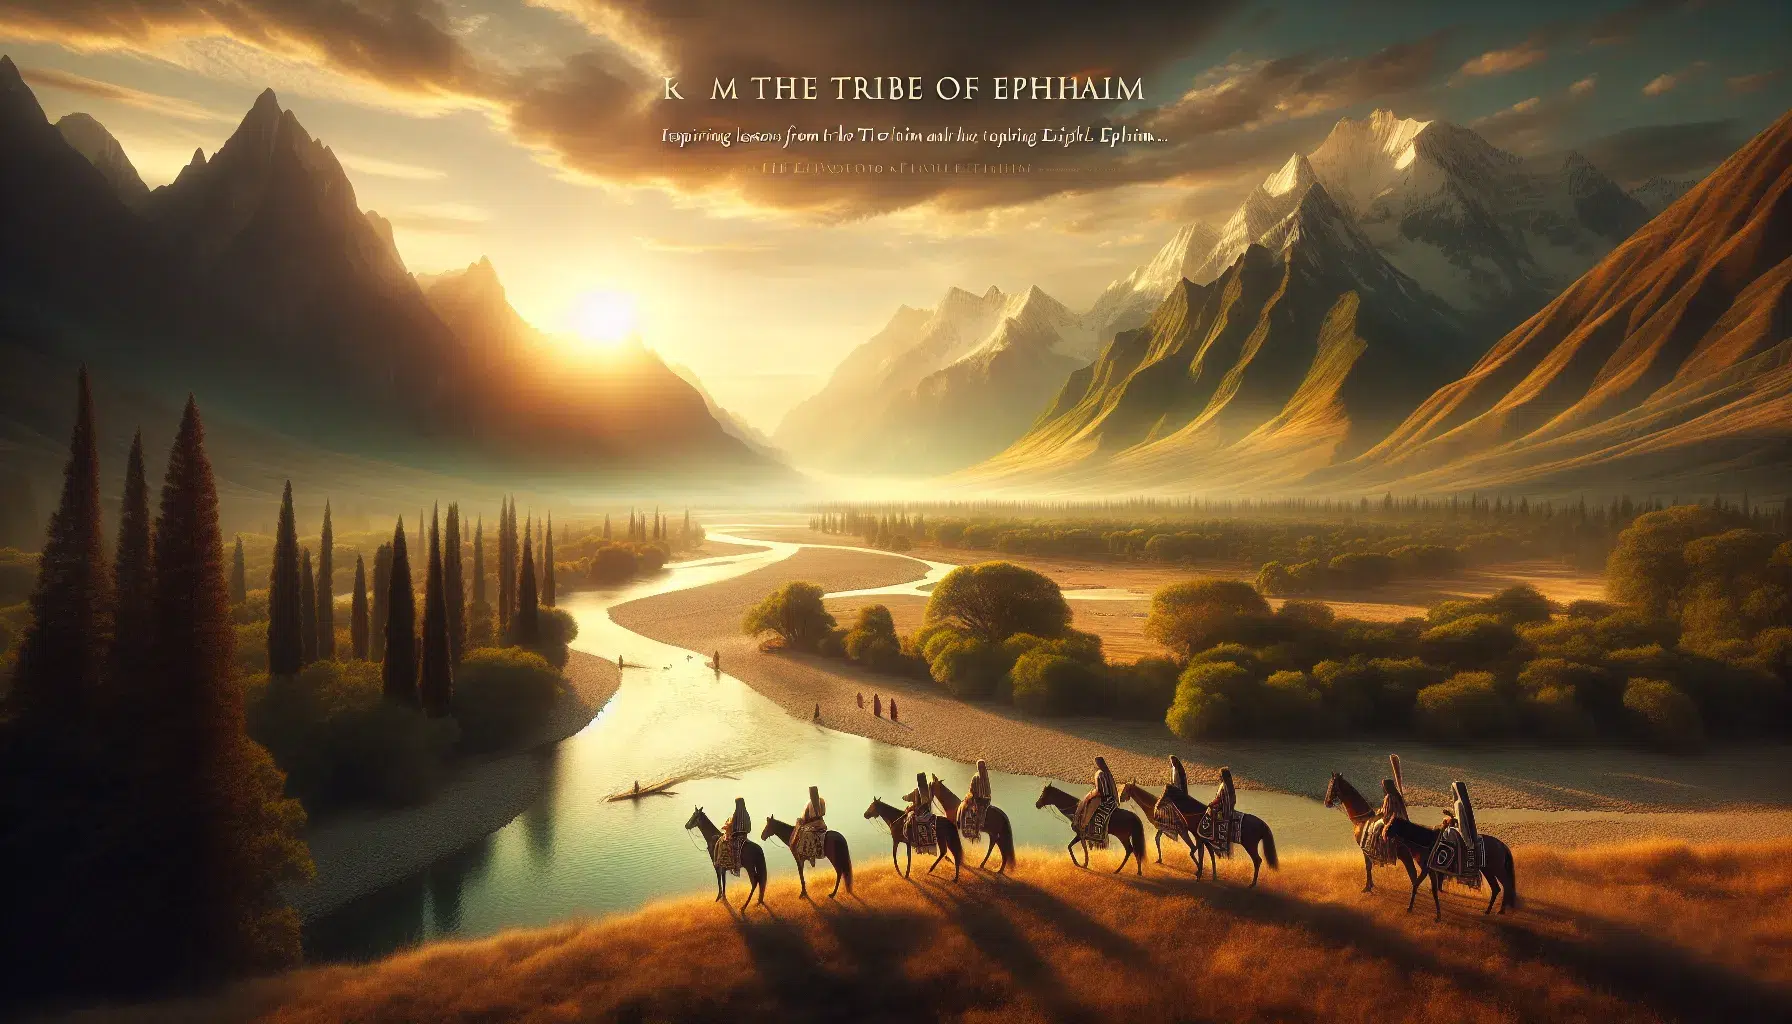 Descubre las lecciones inspiradoras de la tribu de Efraín en nuestra última publicación.